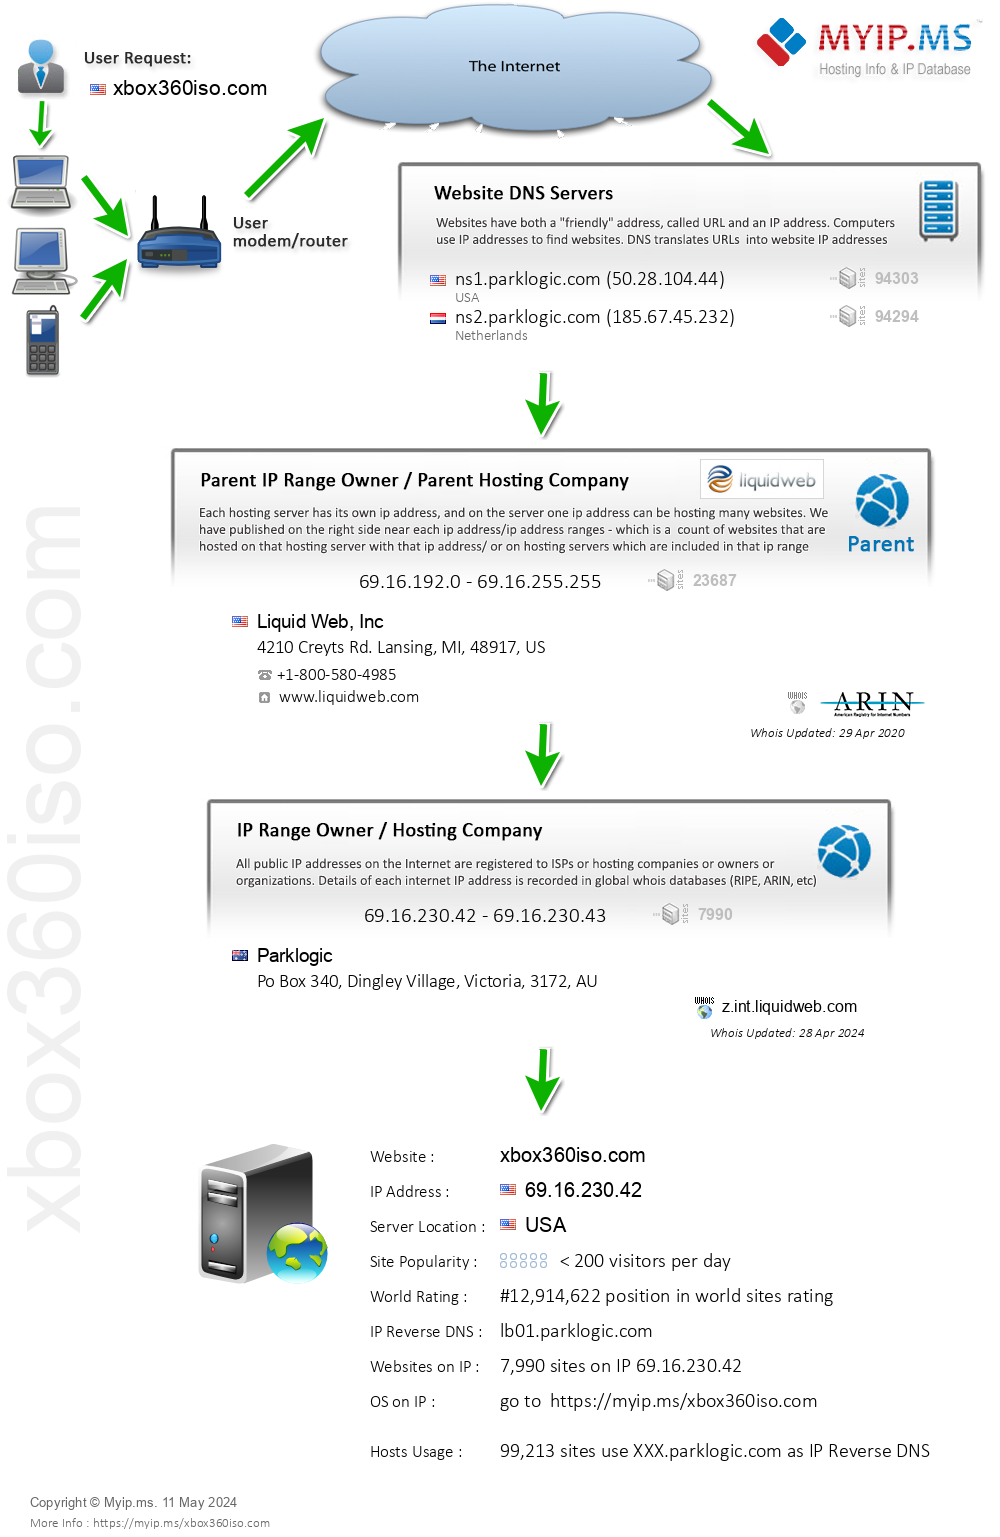 Xbox360iso.com - Website Hosting Visual IP Diagram